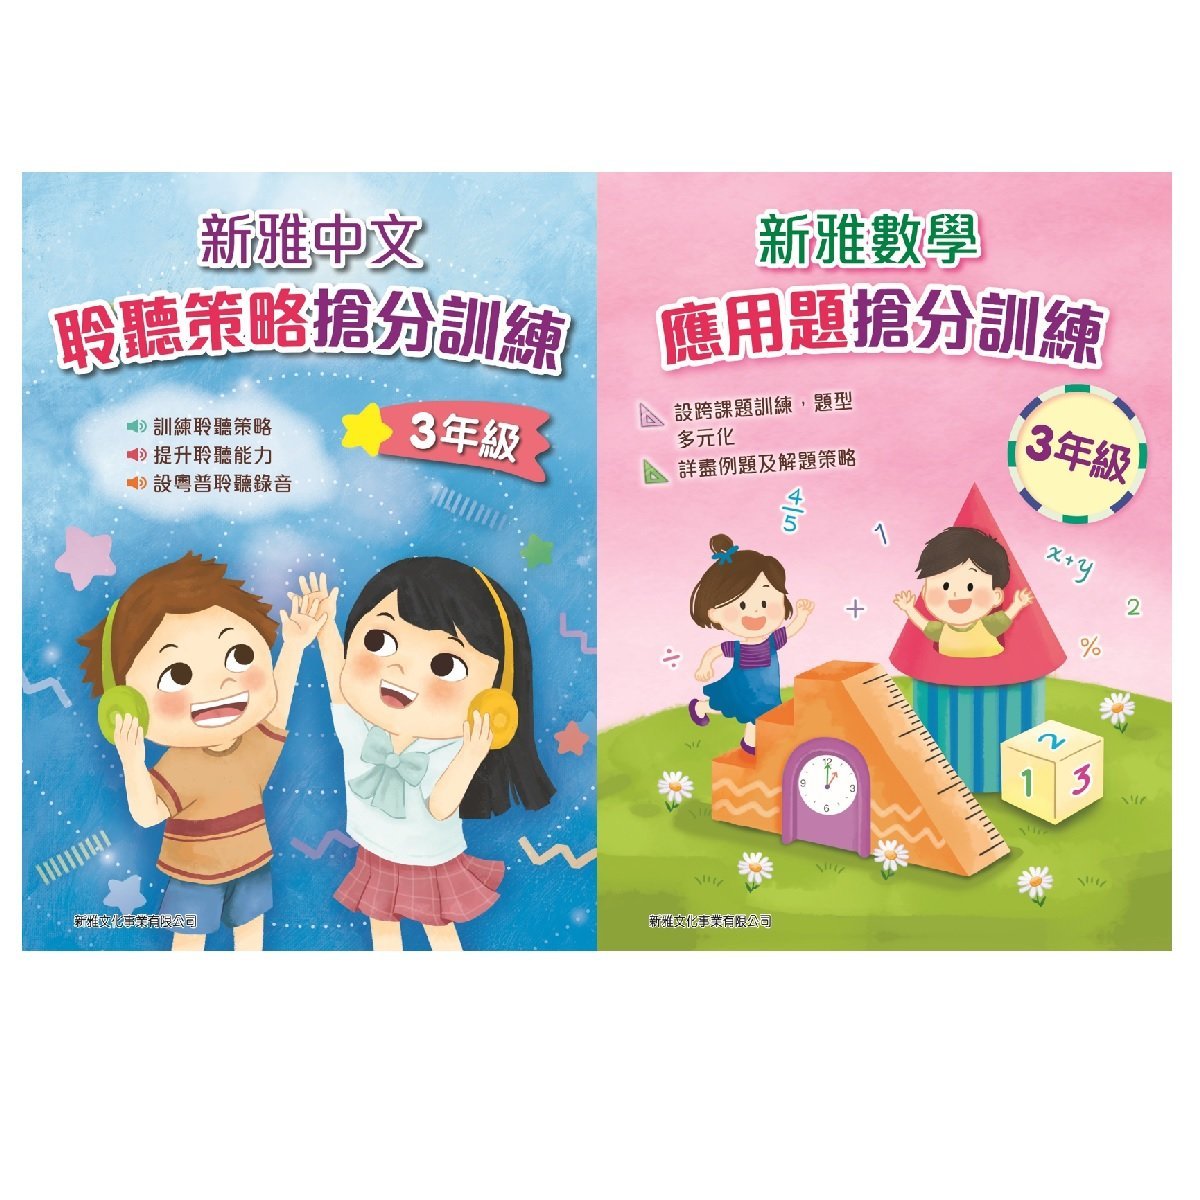 新雅中文聆聽策略搶分訓練、新雅數學應用題搶分訓練 (3年級)  (一套2冊)